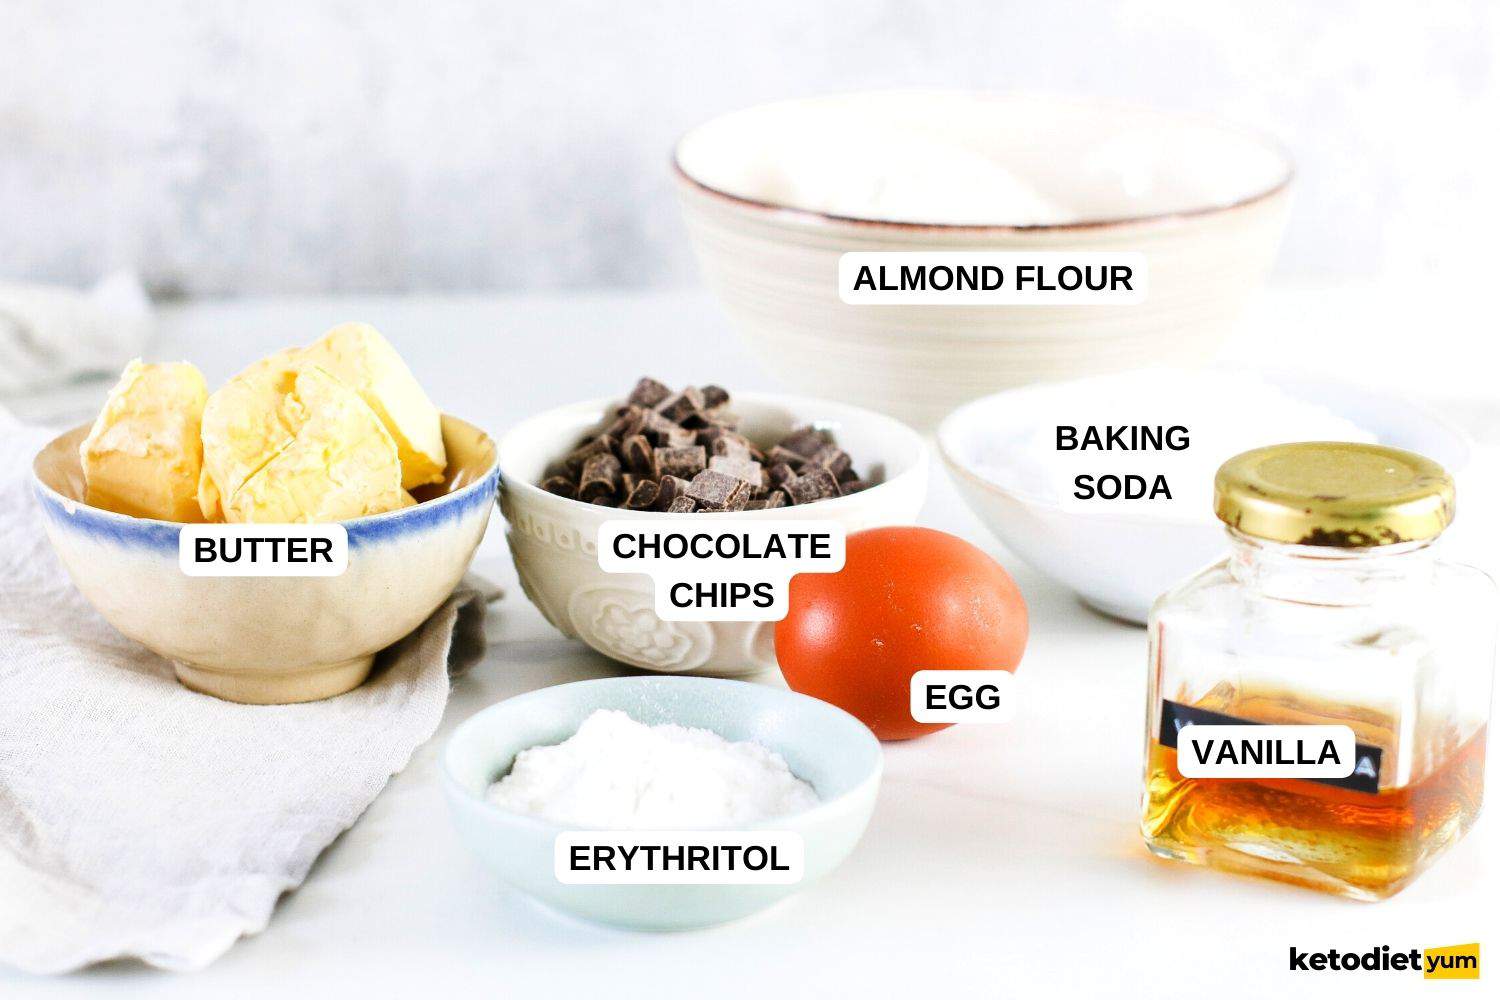 Keto Chocolate Chip Cookie Bars Ingredients